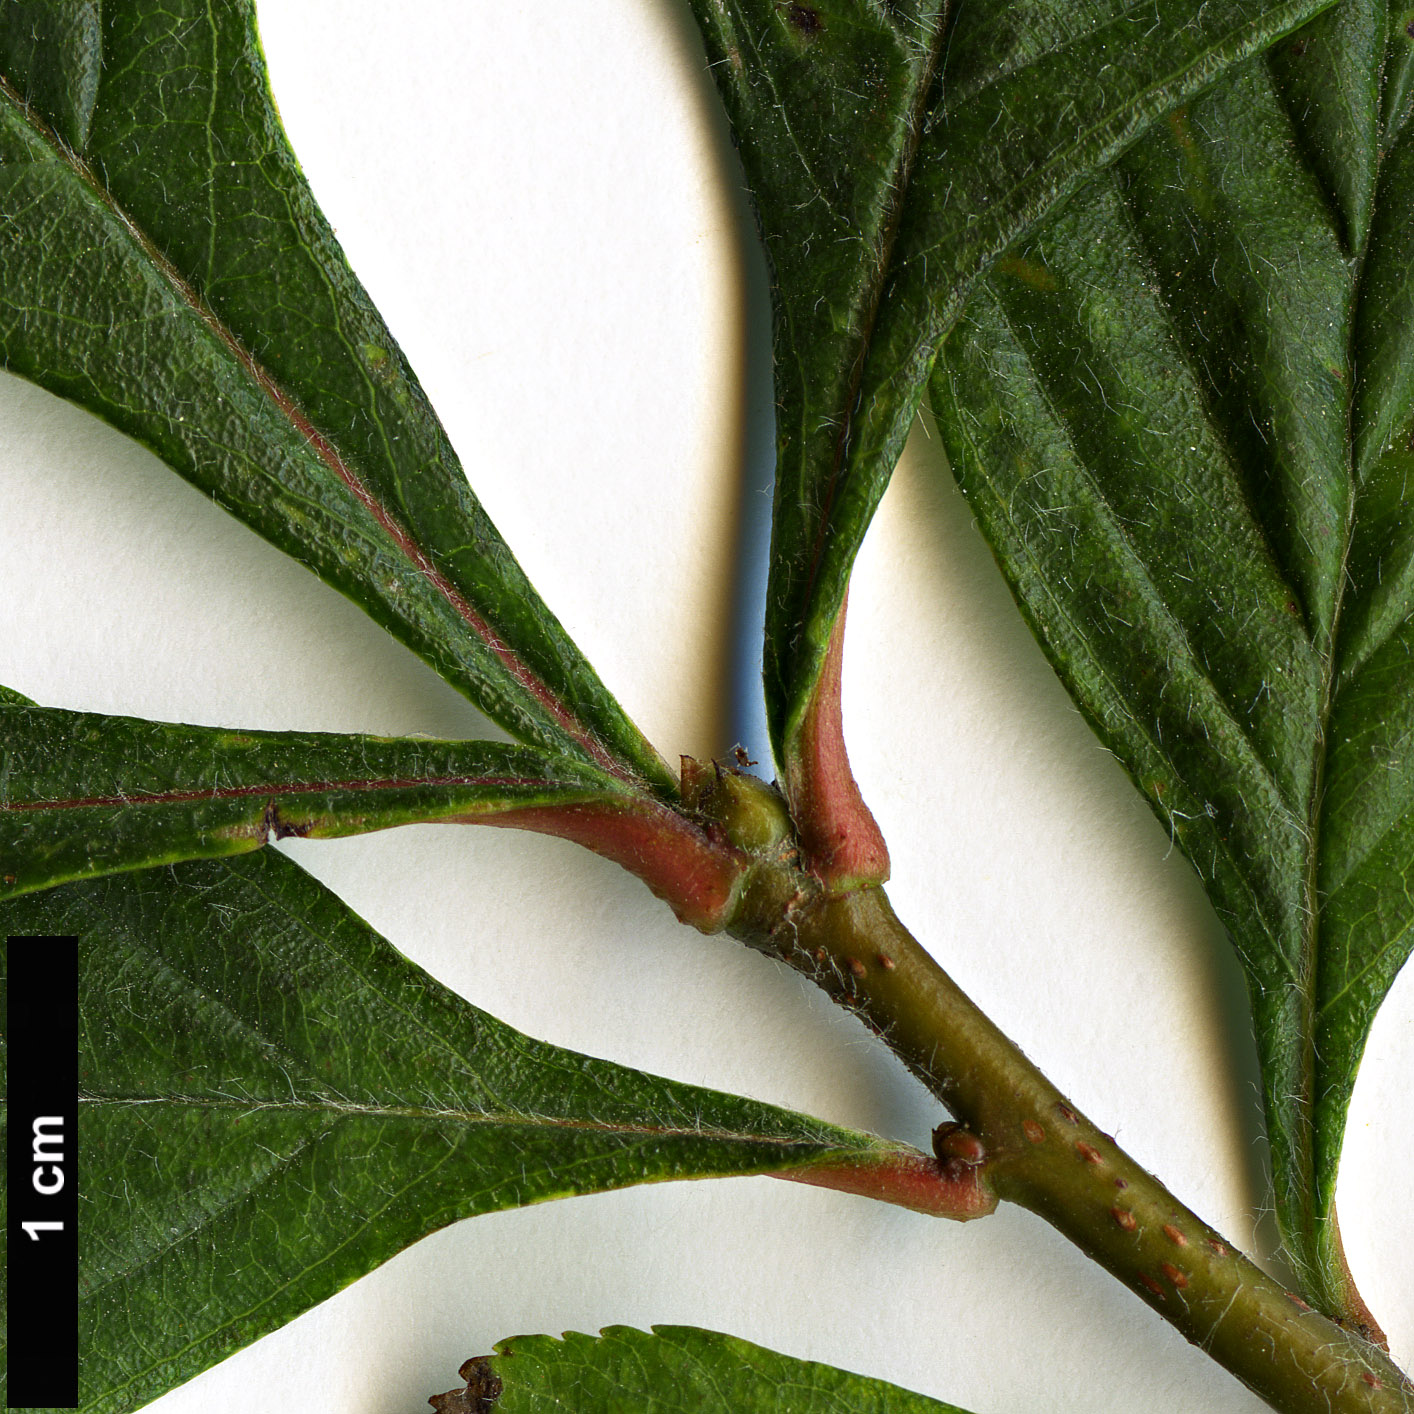 High resolution image: Family: Rosaceae - Genus: Crataegus - Taxon: punctata